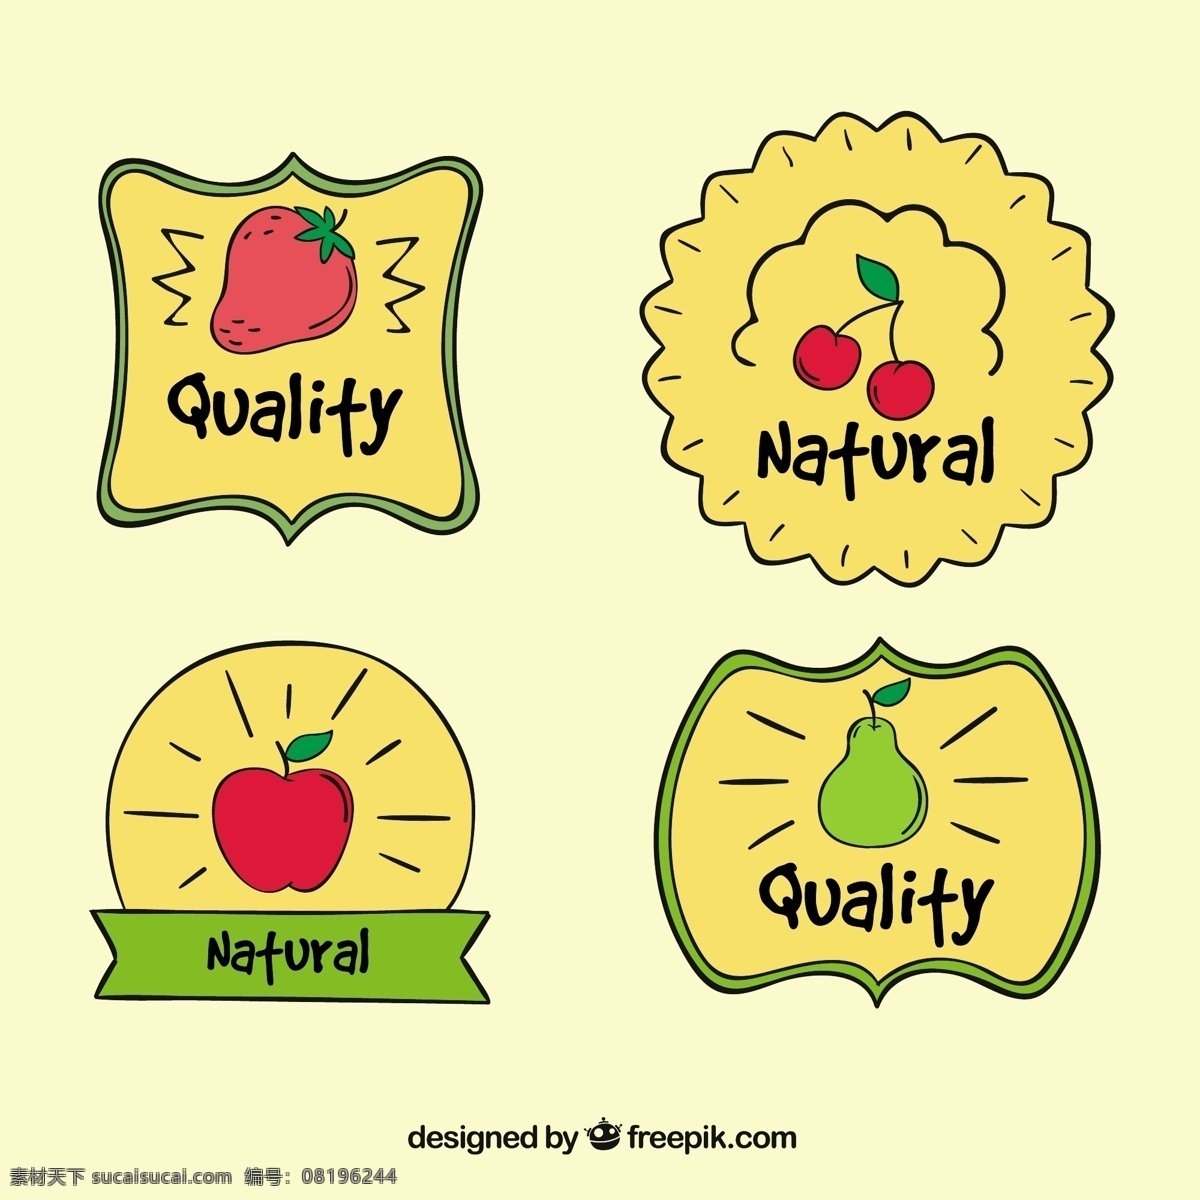 一包 手绘 水果 贴纸 食物方面 夏天 标签 热带 绘图 汁 天然 健康 吃 健康食品 质量 饮食 营养